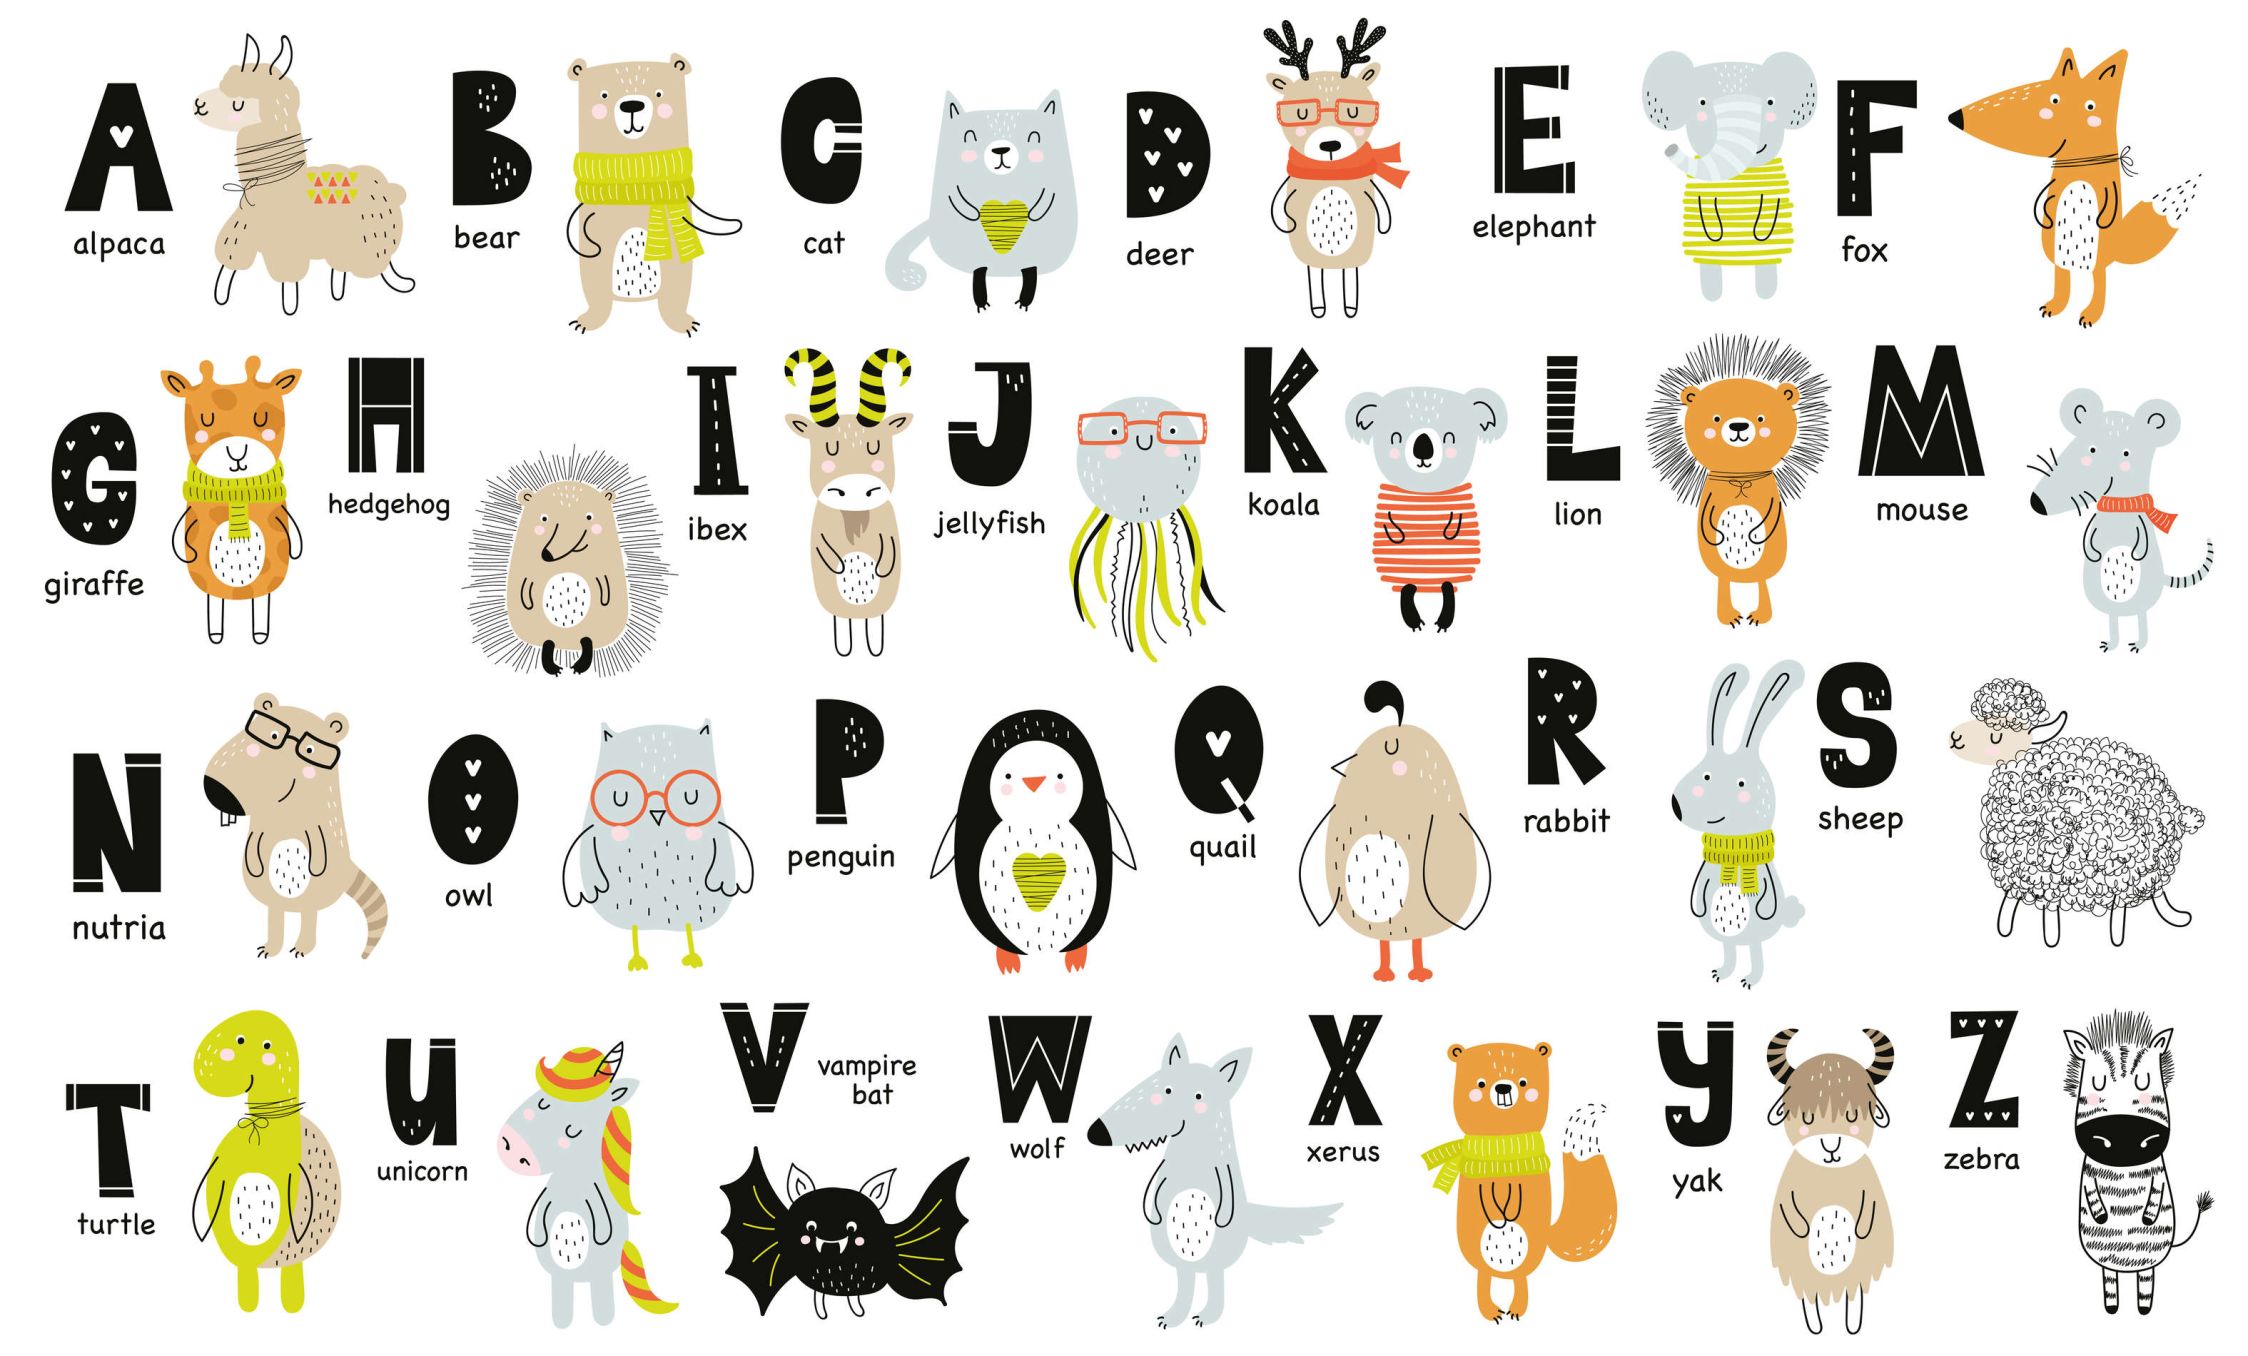             papiers peints à impression numérique Alphabet avec animaux et noms d'animaux - intissé lisse & nacré
        